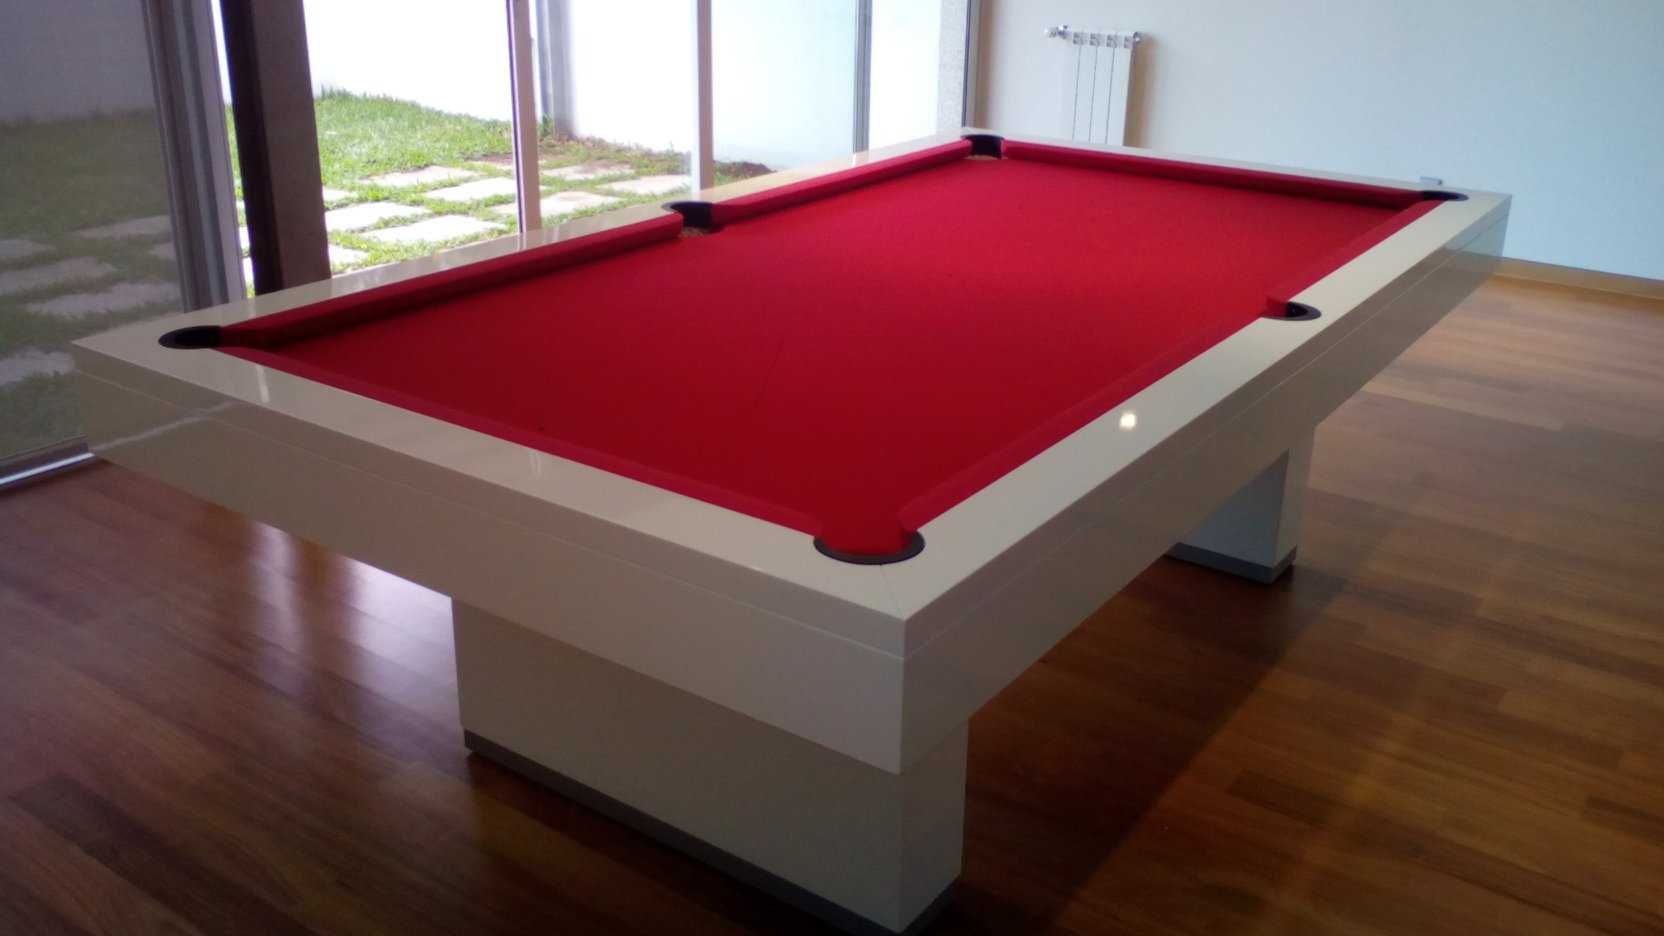 Snooker modelo "Funchal" - NOVOS